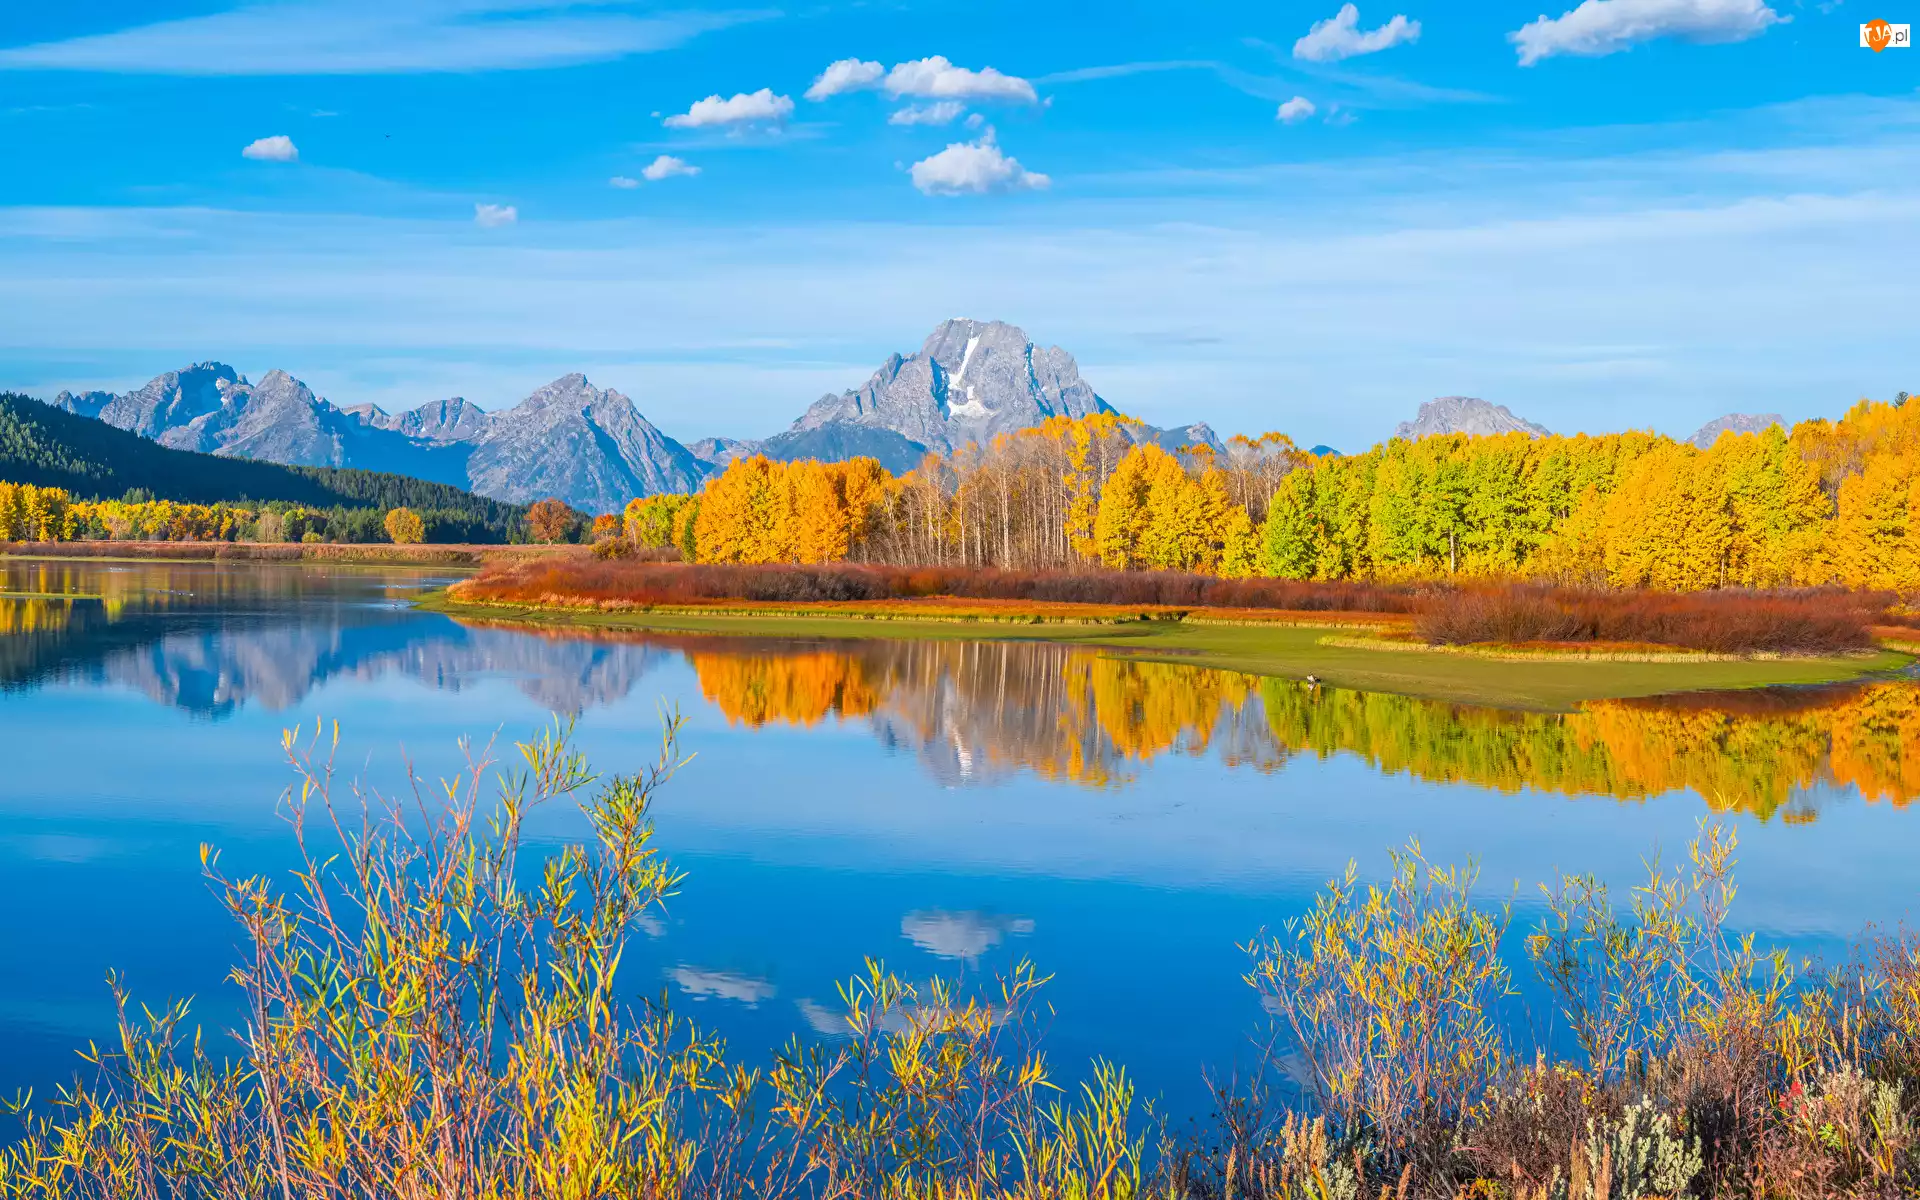 Park Narodowy Grand Teton, Stany Zjednoczone, Teton Range, Drzewa, Stan Wyoming, Rzeka Snake River, Odbicie, Góry